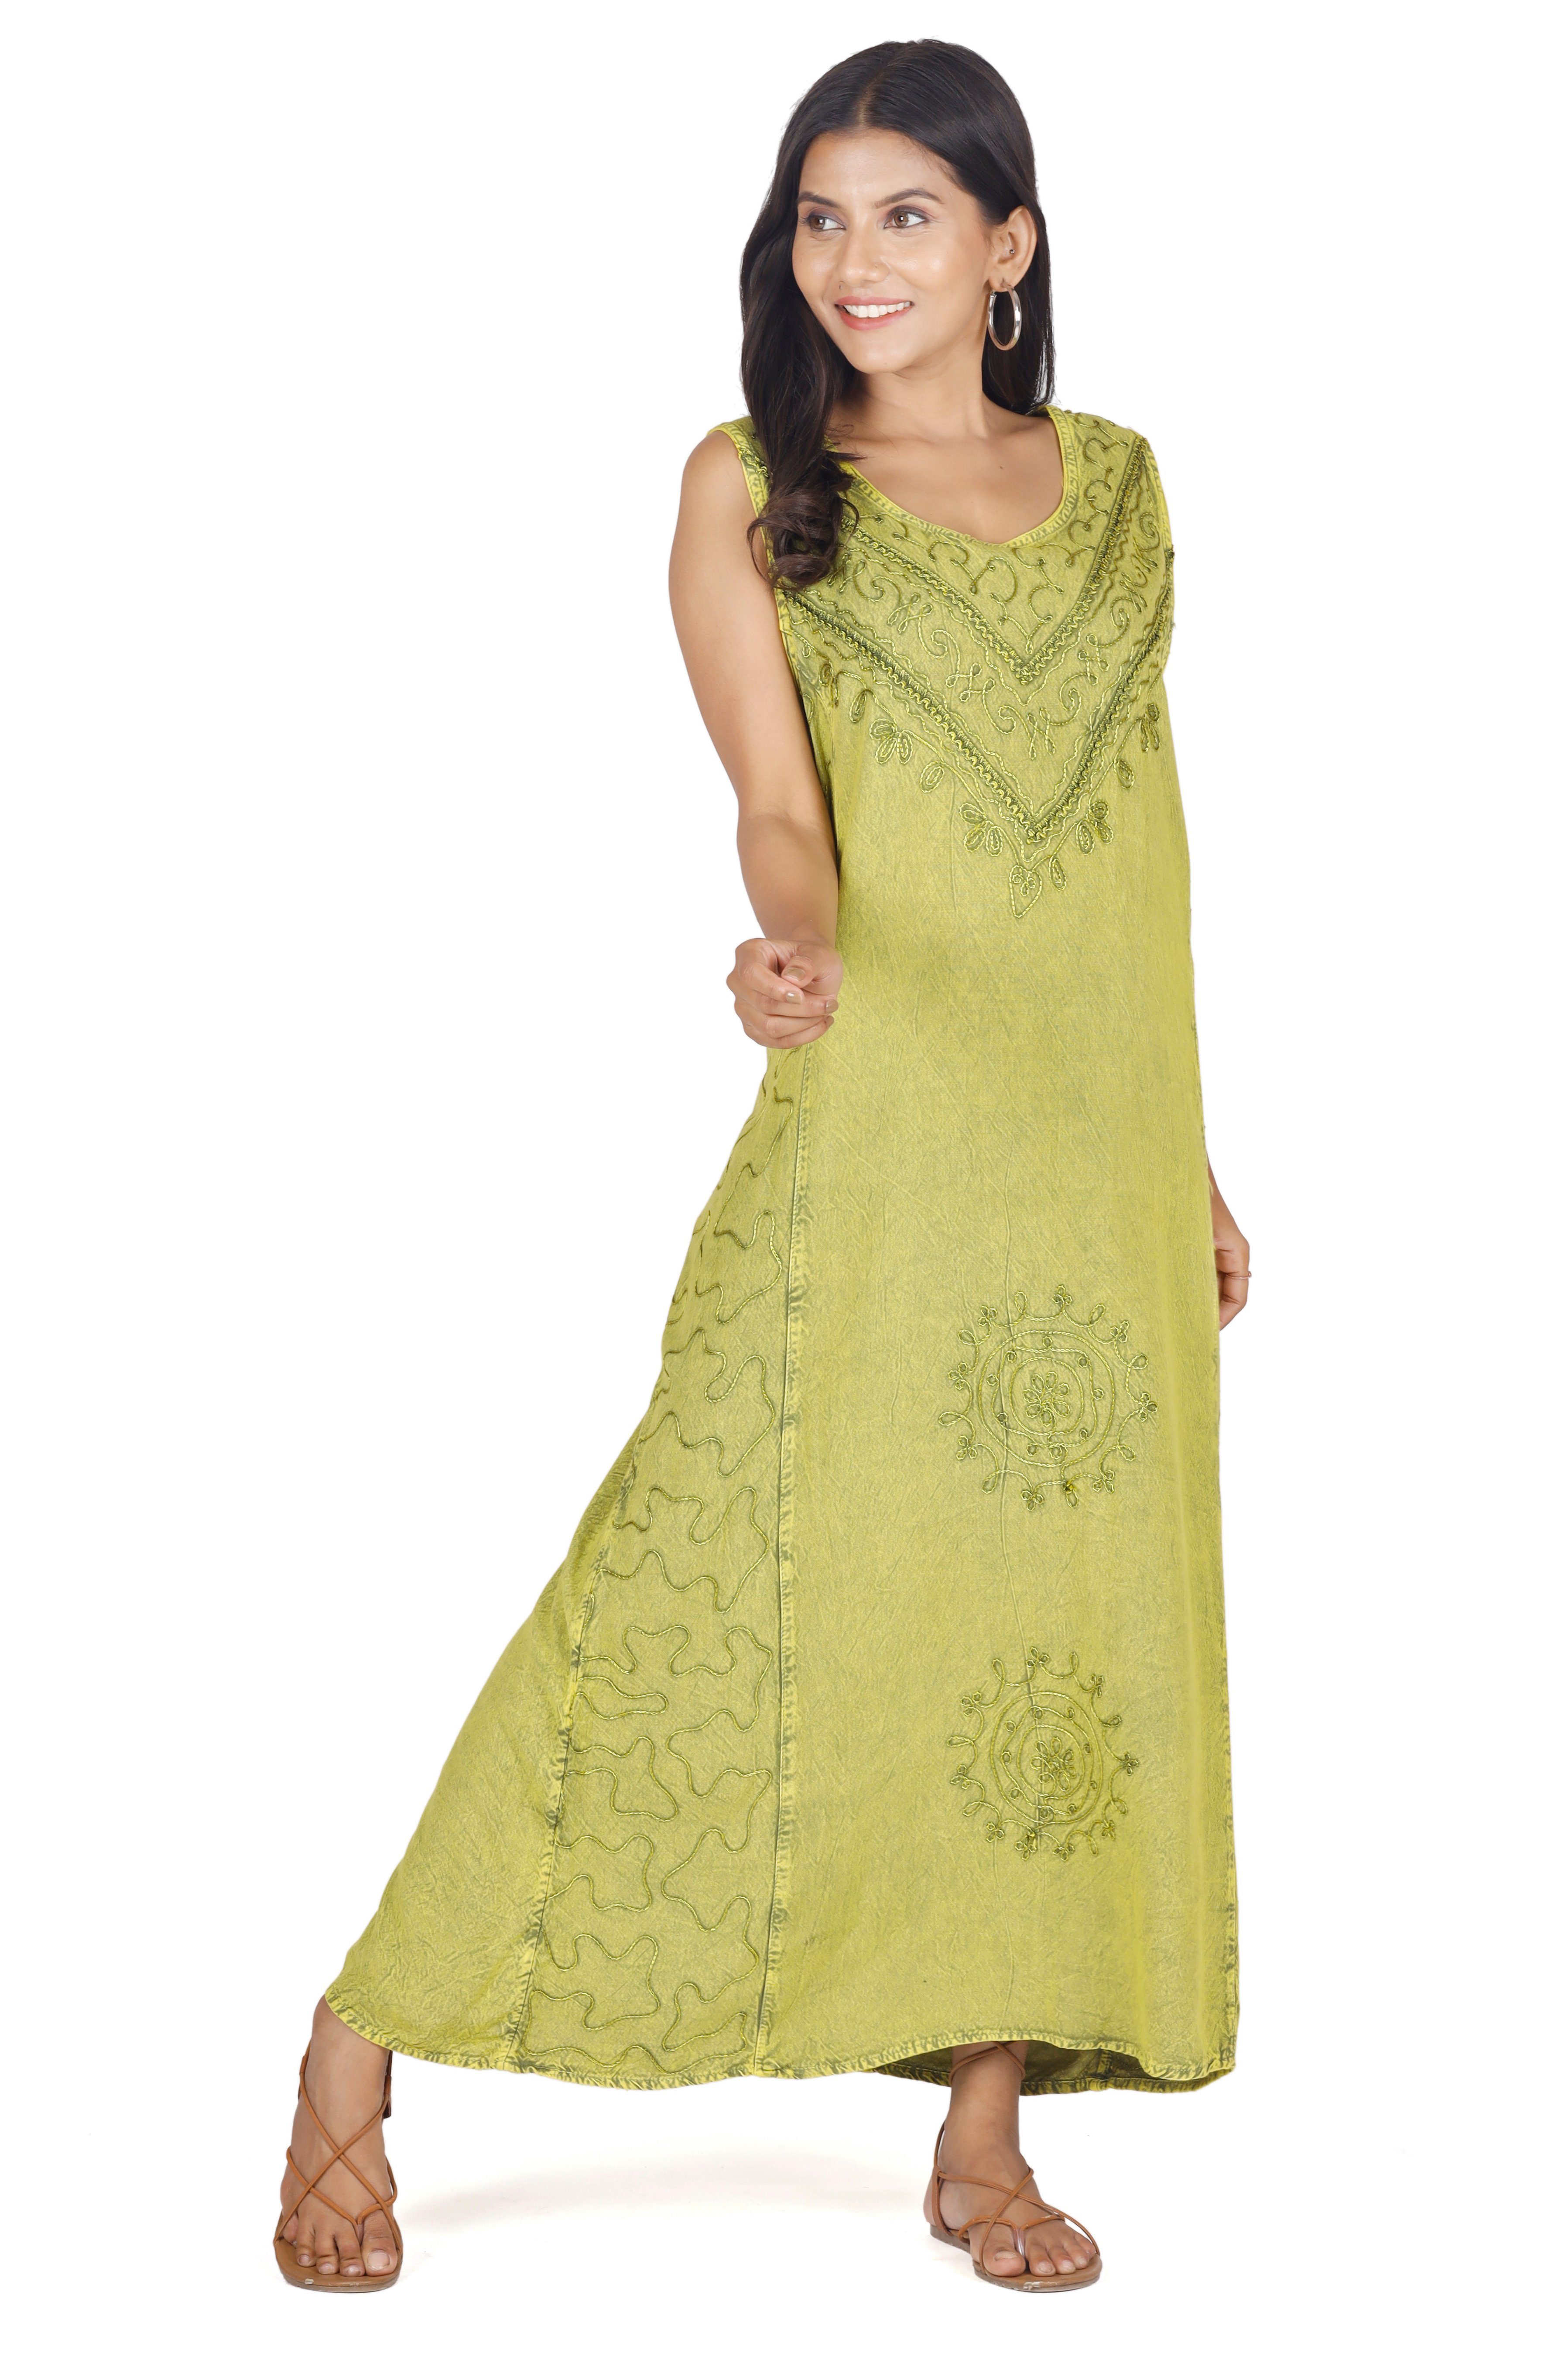 Bekleidung indisches Sommerkleid, Guru-Shop Besticktes Midikleid 4 lemon/Design Hippie.. Boho alternative